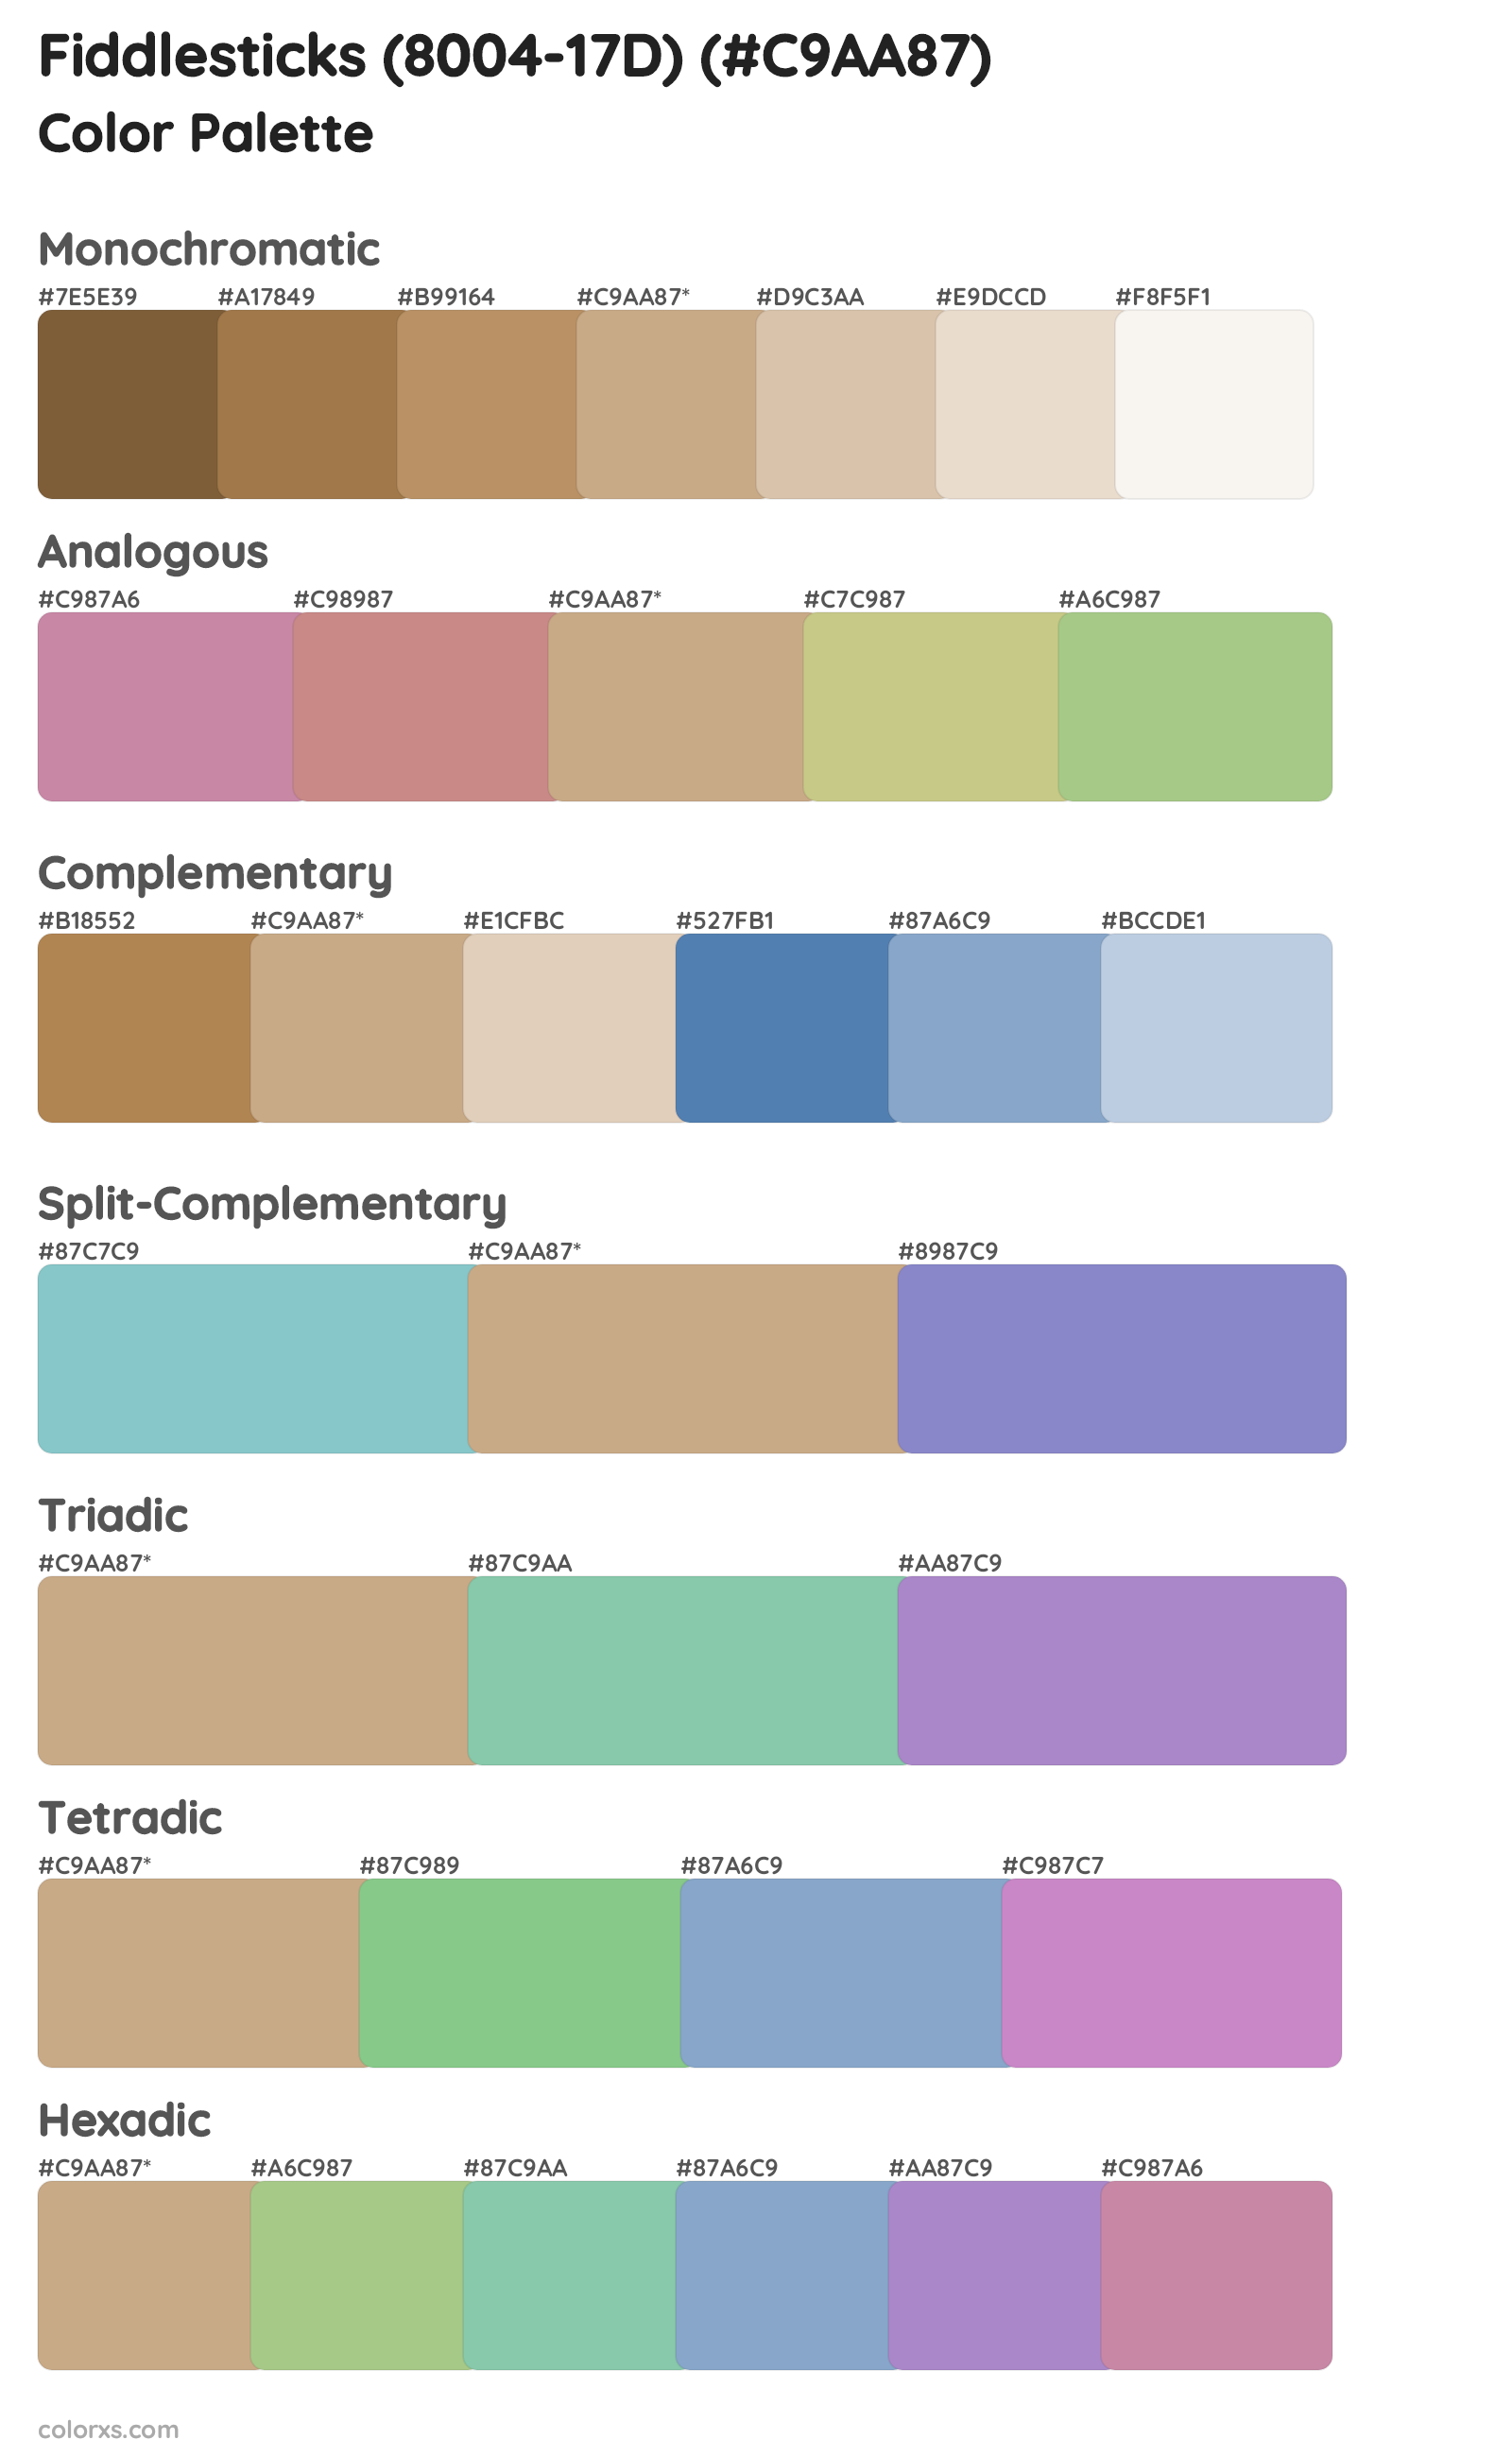 Fiddlesticks (8004-17D) Color Scheme Palettes